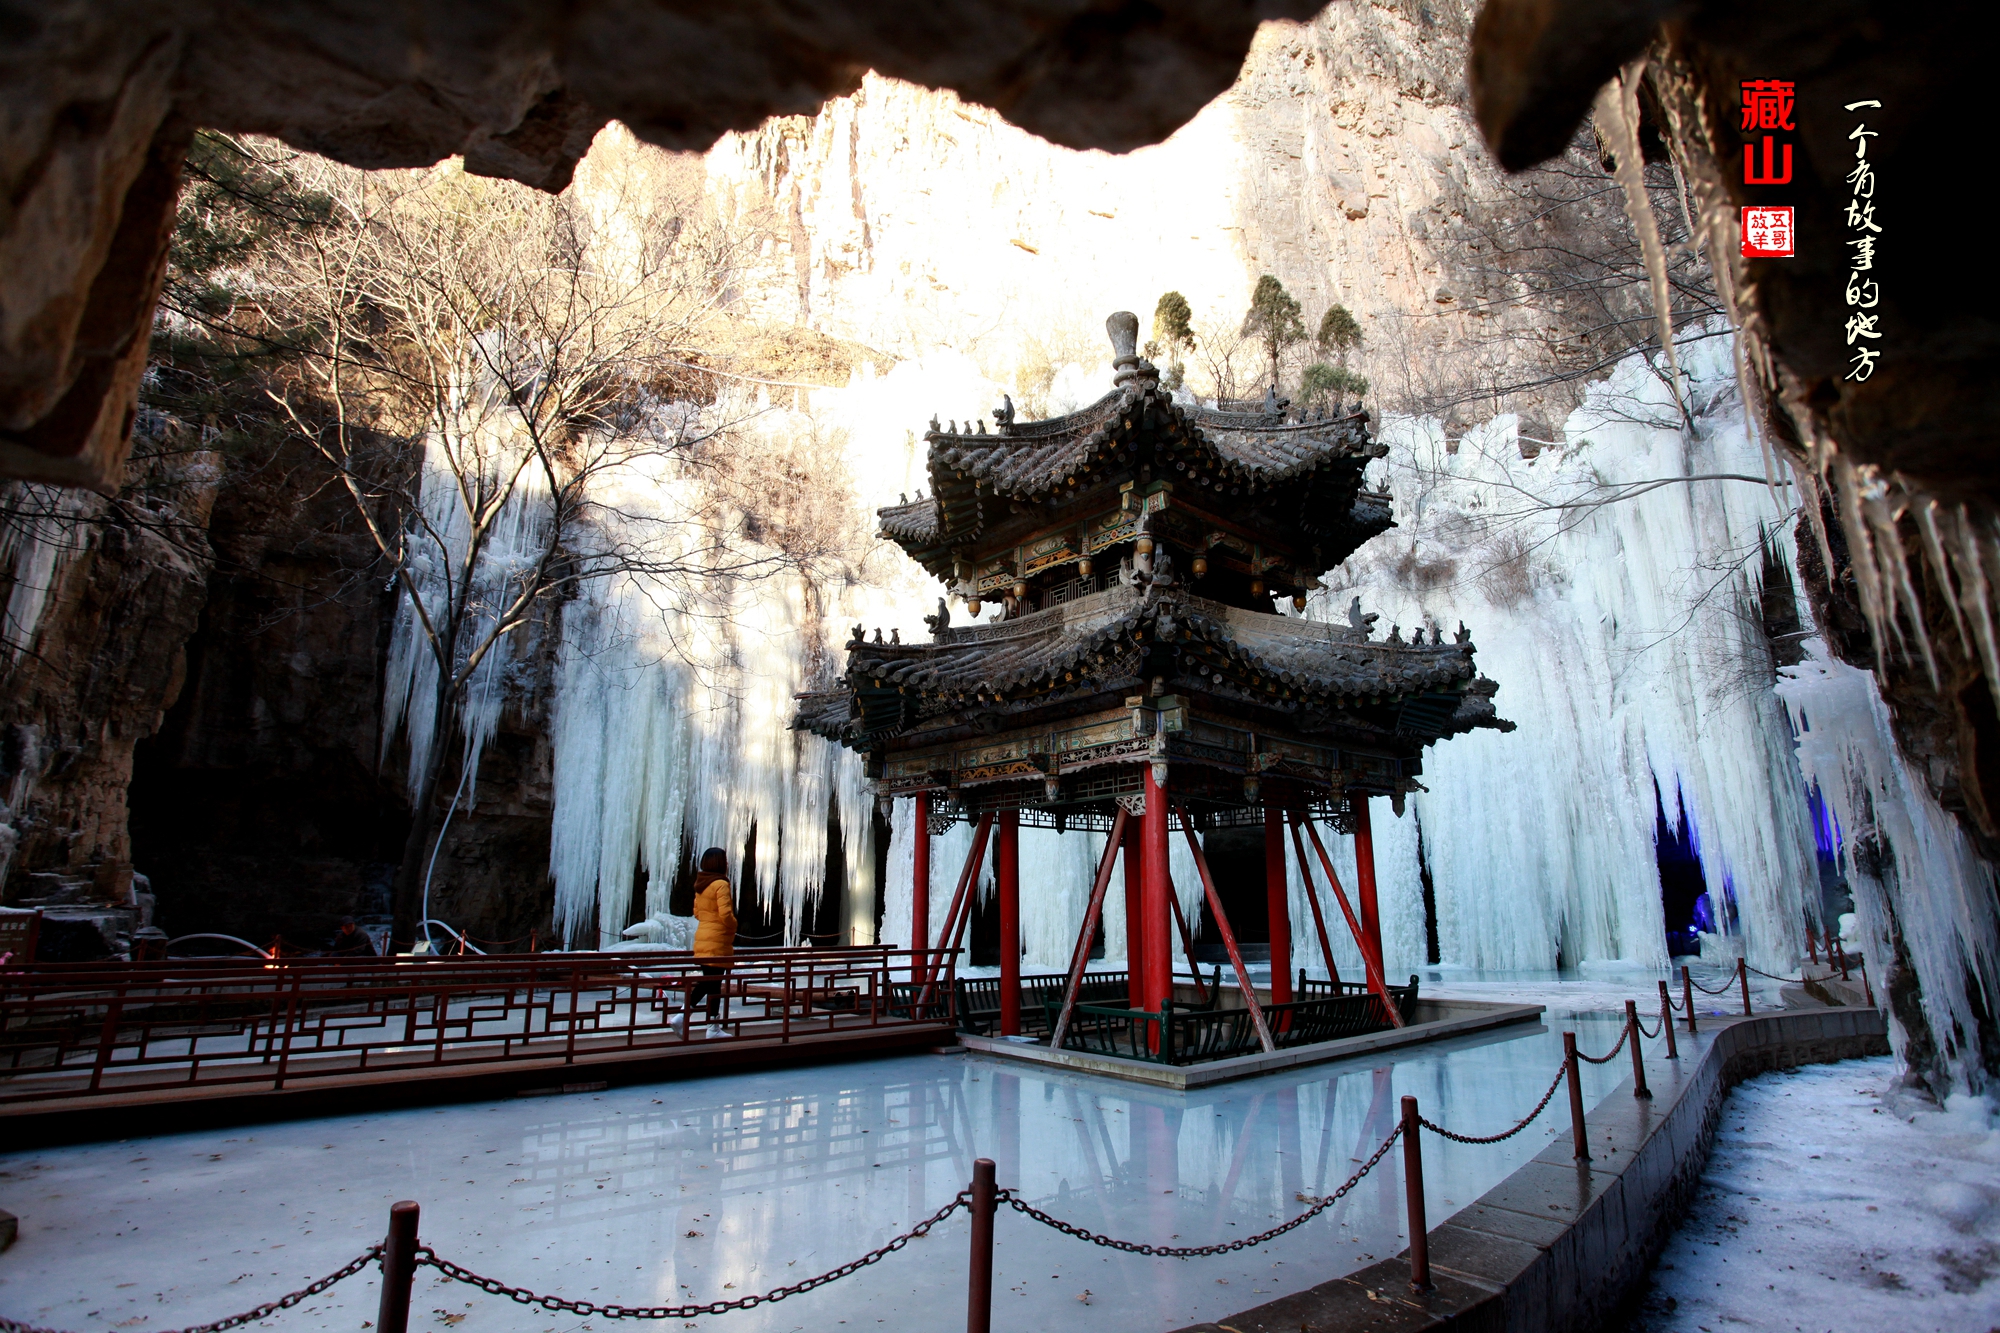 据藏山风景区导游介绍,藏山冰洞美景待